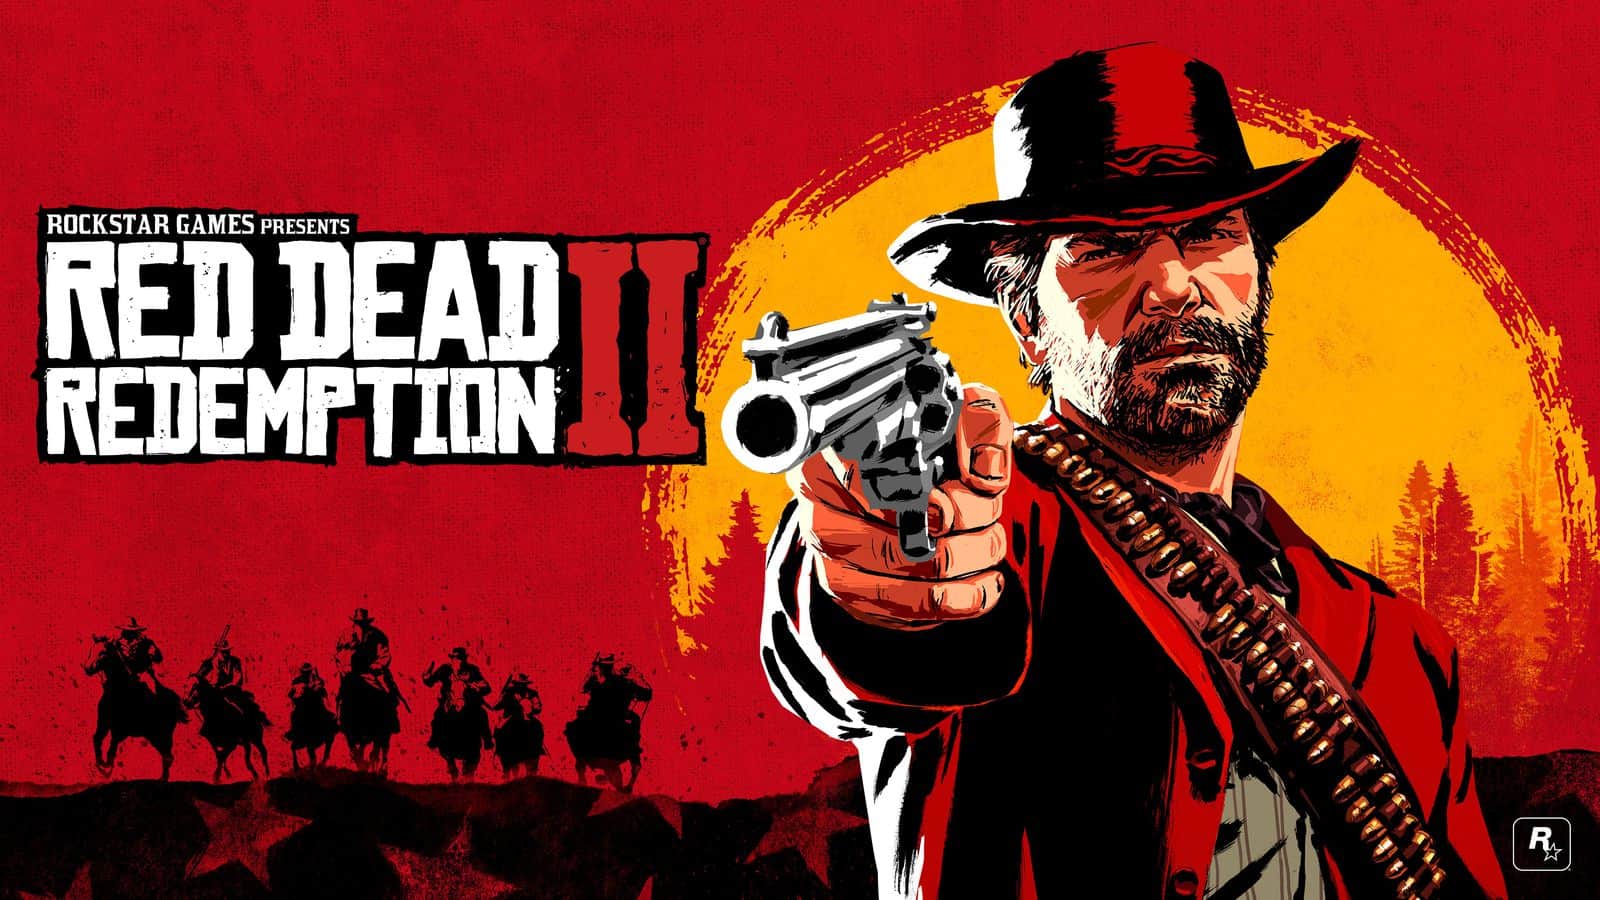 tale surfing Blind tillid PS4 Red Dead Redemption 2 Save Game 71% | RDR 2 Save File